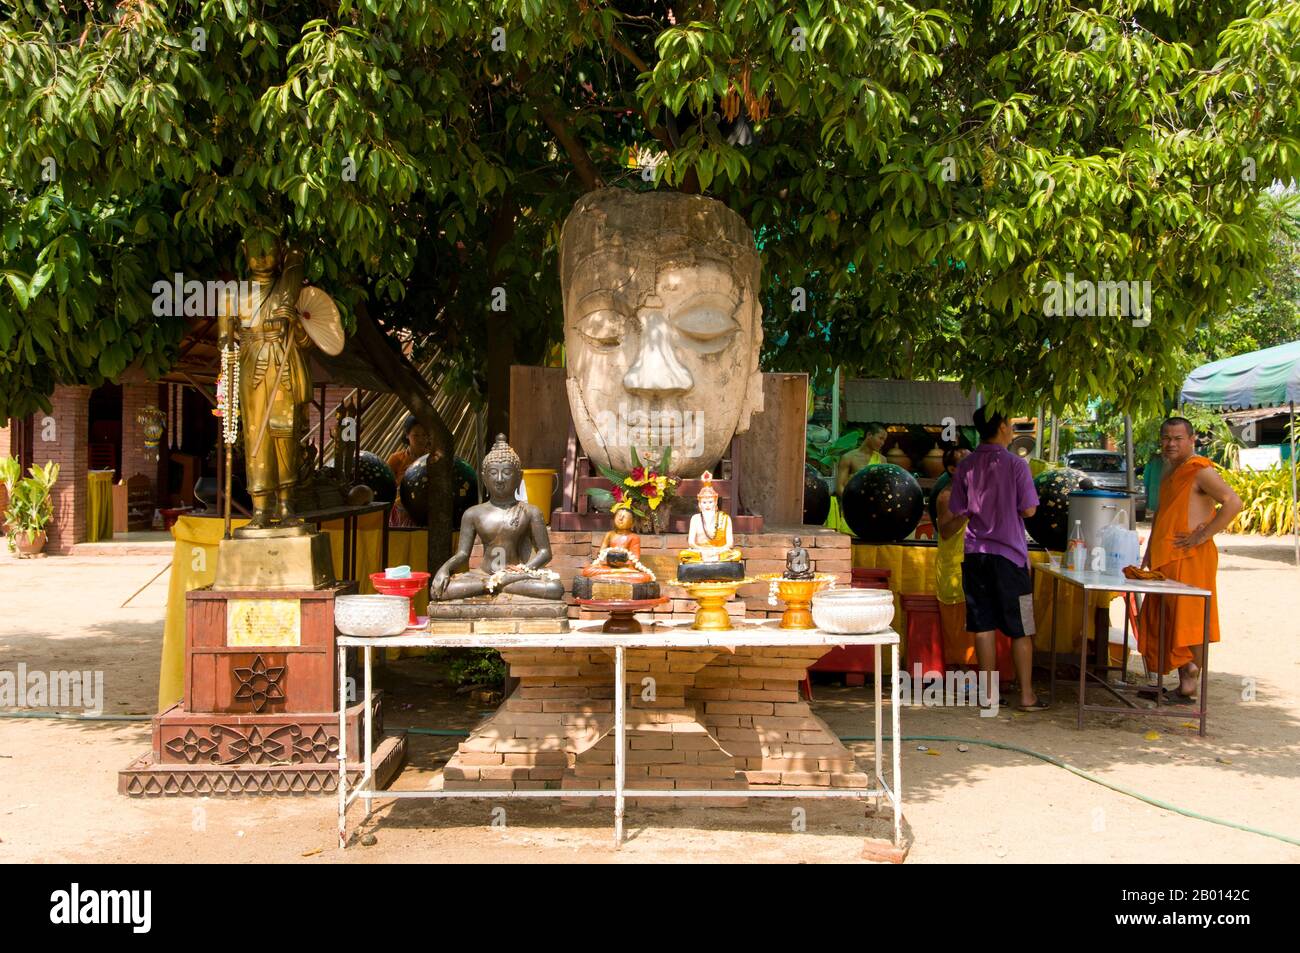 Thailand: Der alte Buddha-Kopf und der Altar wurden für das songkran-Fest auf dem Gelände des Wat Chetlin, Chiang Mai, eingerichtet. Songkran ist das traditionelle thailändische Neujahr und wird vom 13. Bis 15. April gefeiert. Dieses jährliche Wasserfest, das auf Thai als „songkran“ und auf Burma als „Thingyan“ bekannt ist, markiert den Beginn der Regenzeit und wird in Burma, Laos, Thailand und anderen südostasiatischen Ländern, in der Regel im April, gefeiert. Chiang Mai (was „neue Stadt“ bedeutet), manchmal auch als „Chiengmai“ oder „Chiangmai“ geschrieben, ist die größte und kulturell bedeutsamste Stadt im Norden Thailands. Stockfoto